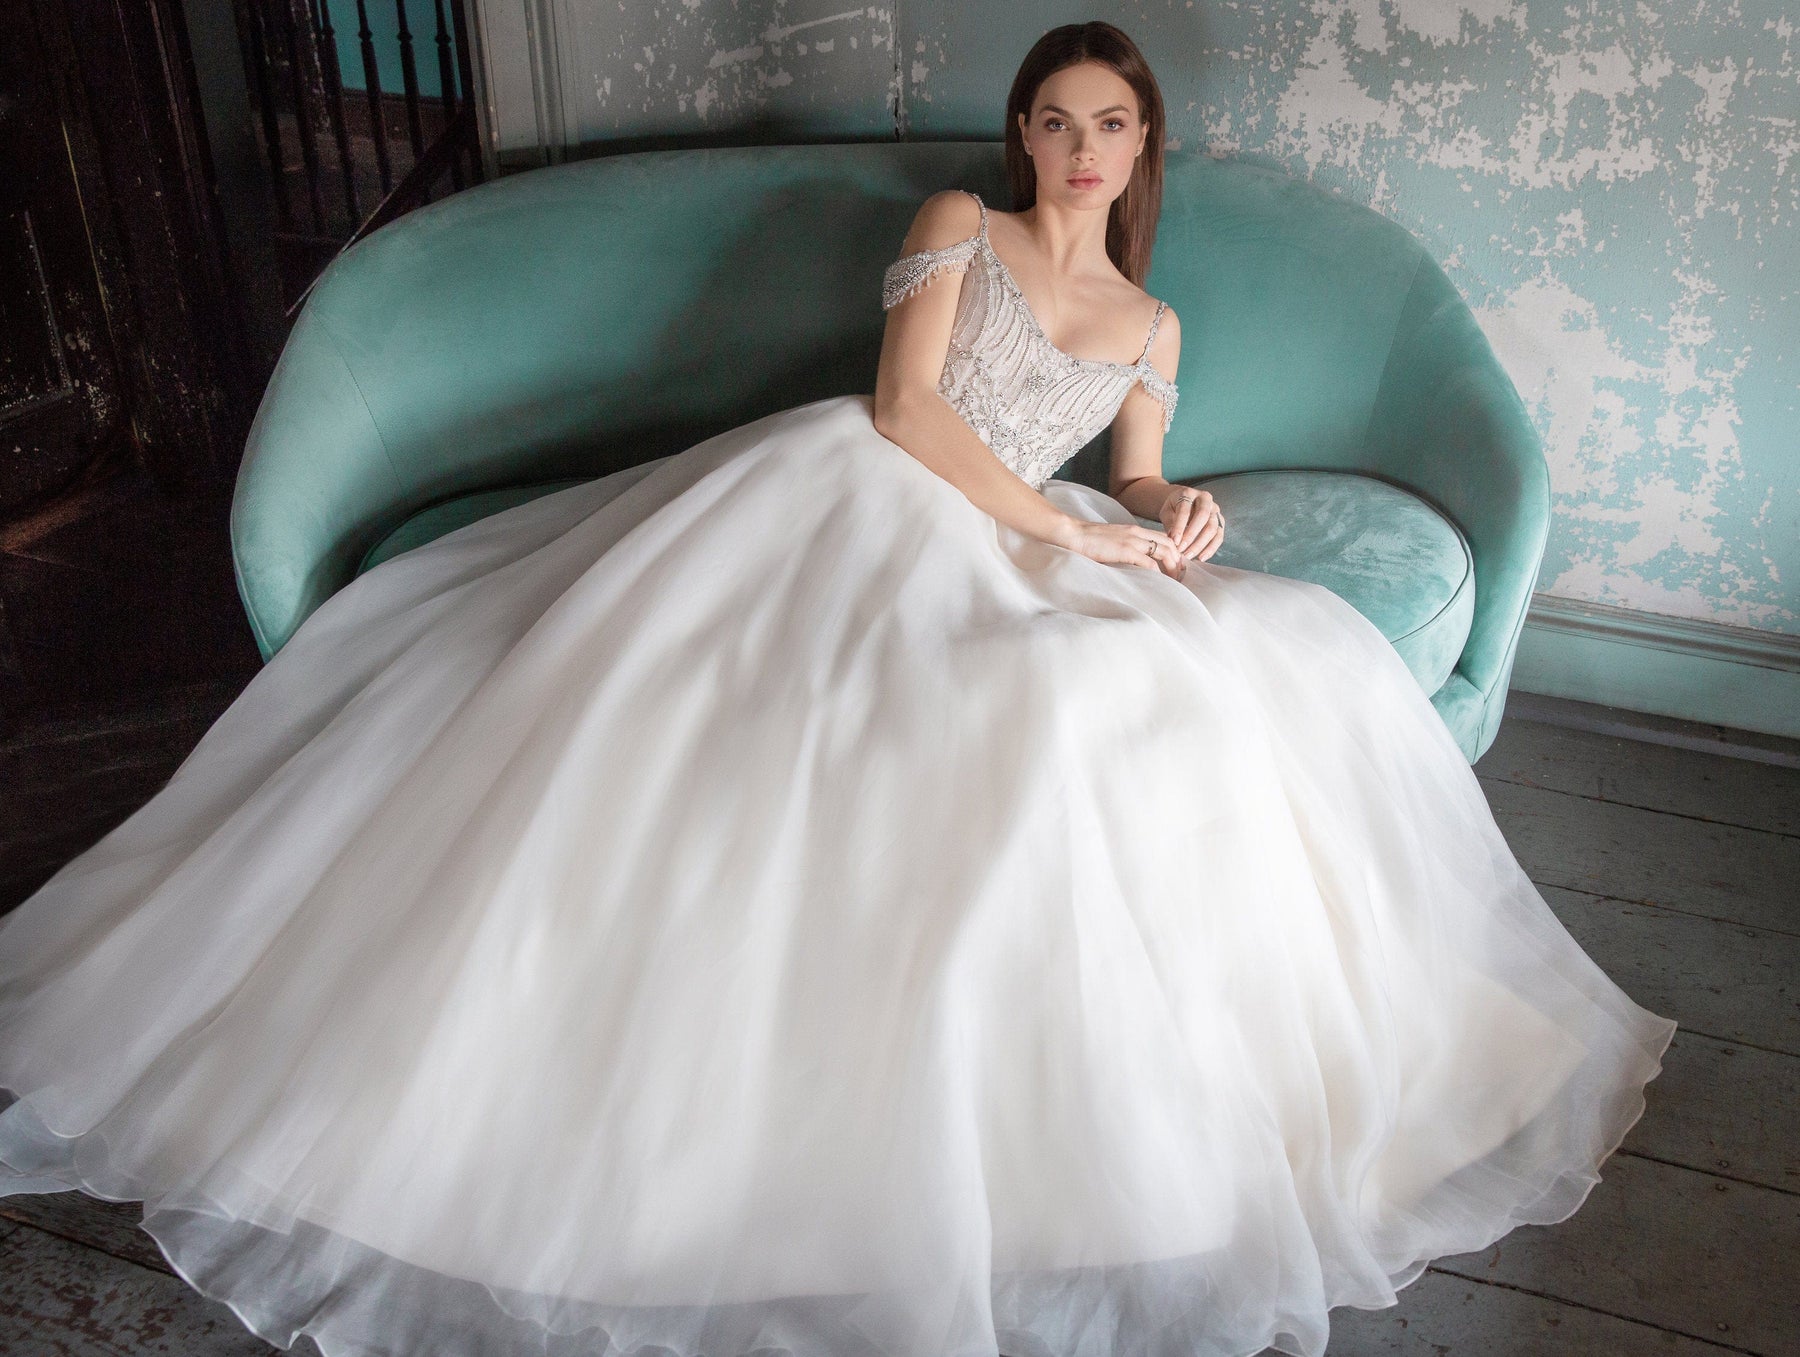 Dress Hunting Made Easy: 5 Hong Kong Bridal Shops with Gorgeous Wedding  Dresses Wedding Dress Hunting Tips | Hong Kong Wedding Blog